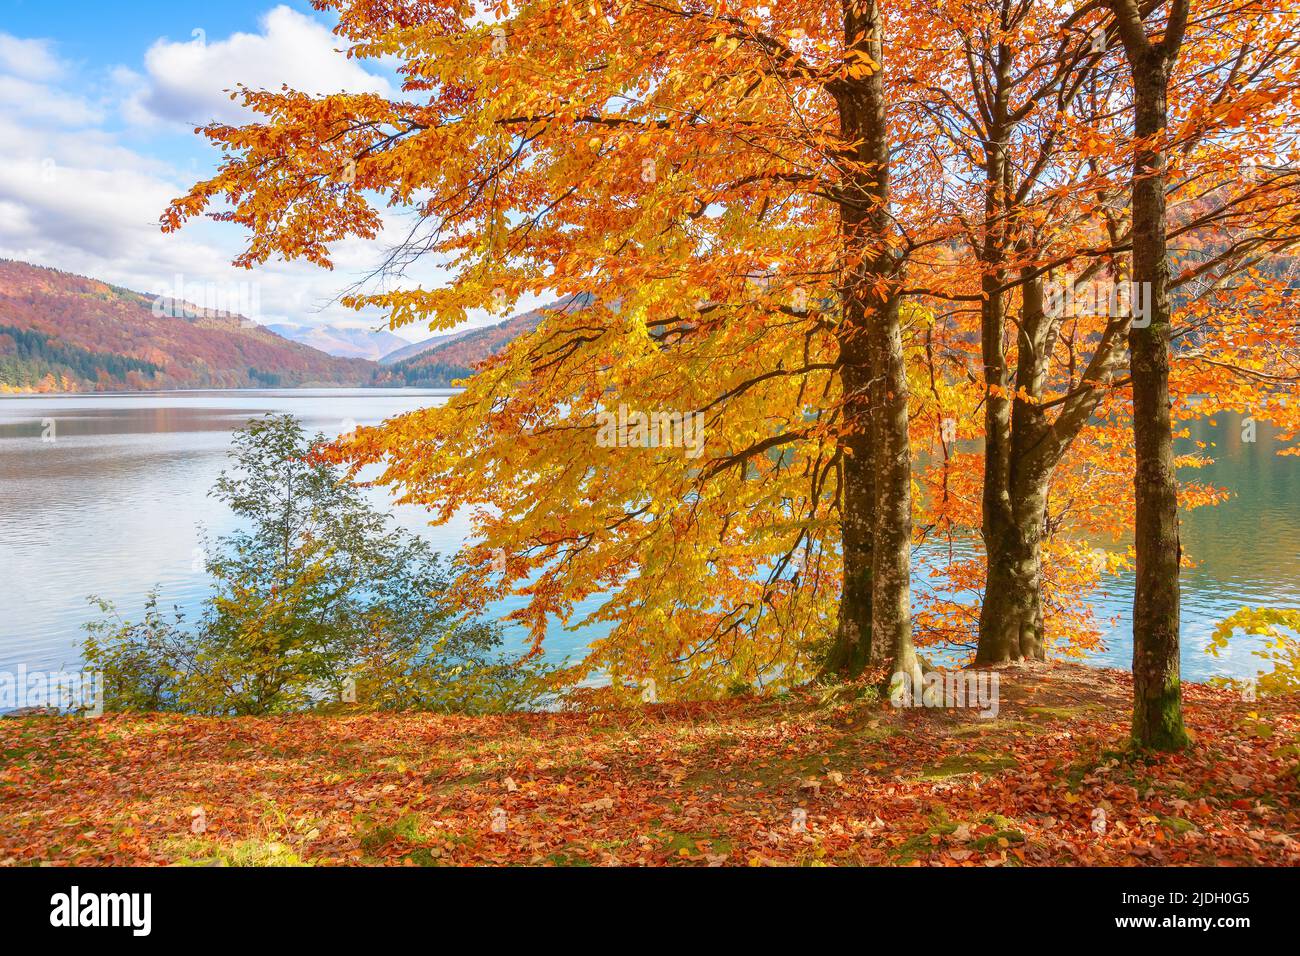 Bäume am Ufer eines Sees. Sonniger Herbstnachmittag. Wunderschöne Landschaft in den Bergen. Himmel mit flauschigen Wolken Stockfoto